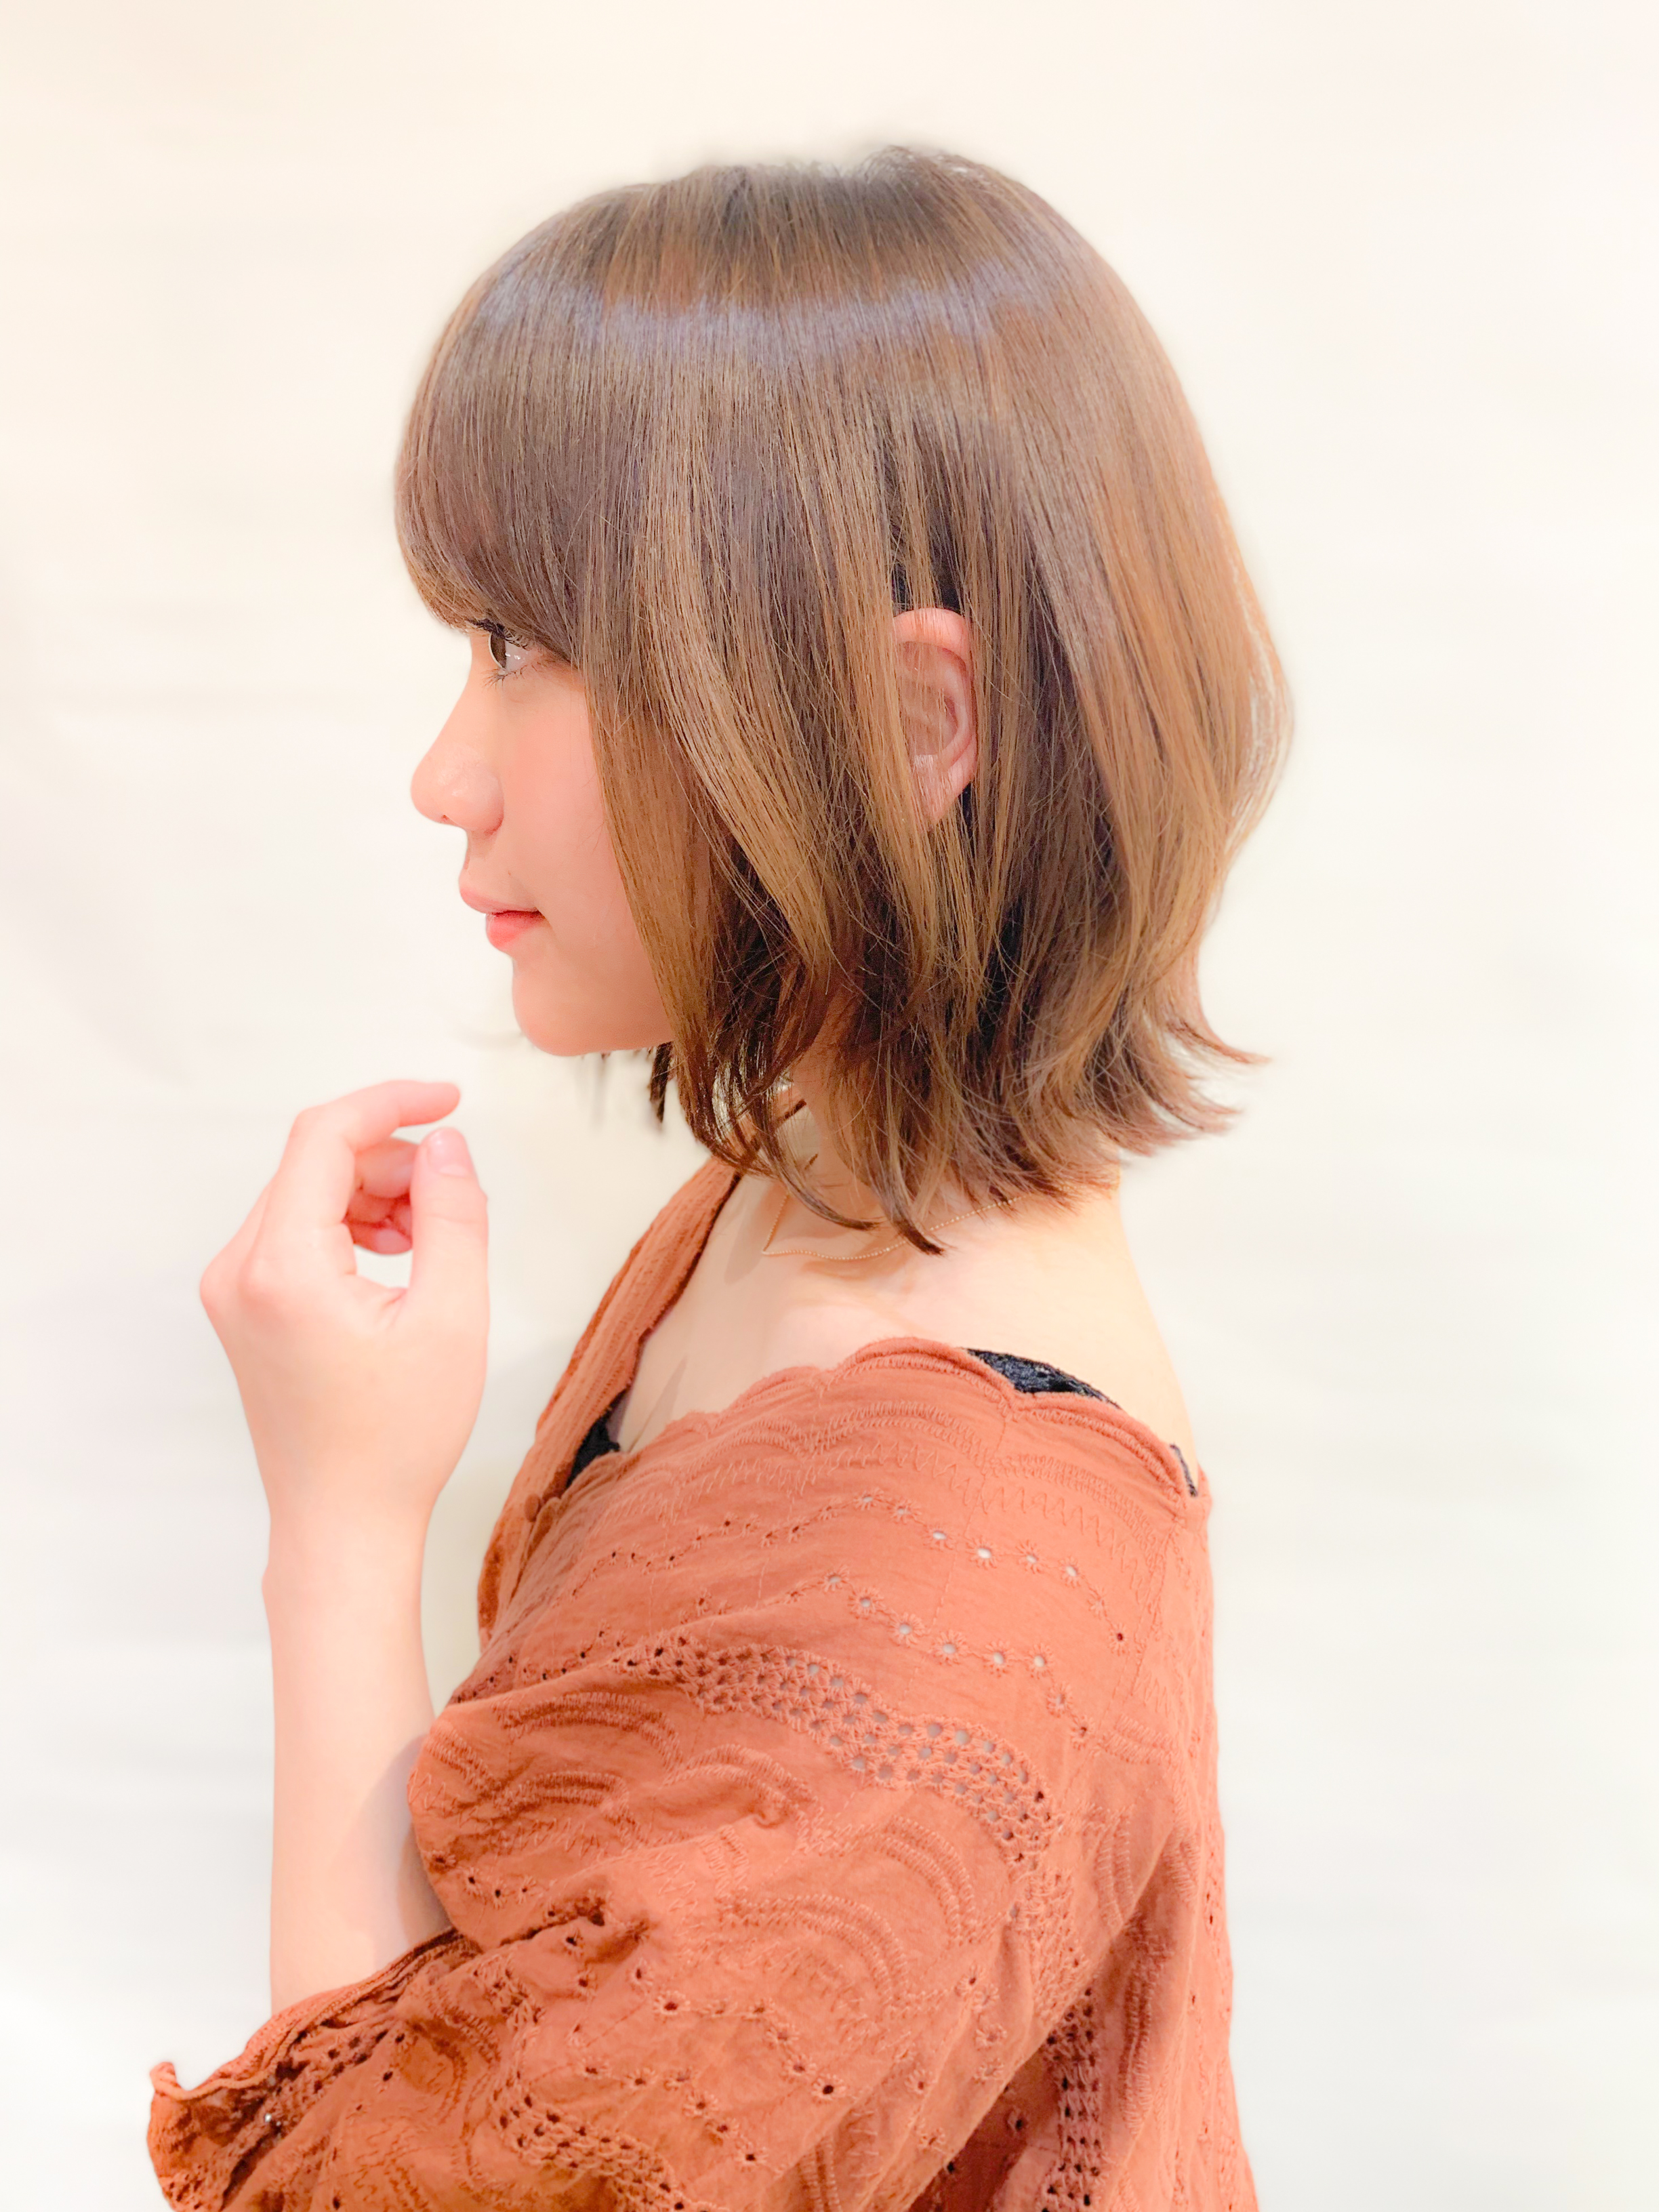 21年冬 レイヤーボブで 気分も軽やかになるヘアスタイルに 似合わせカットが上手い東京の美容師 美容室minx銀座 蛭田のブログ